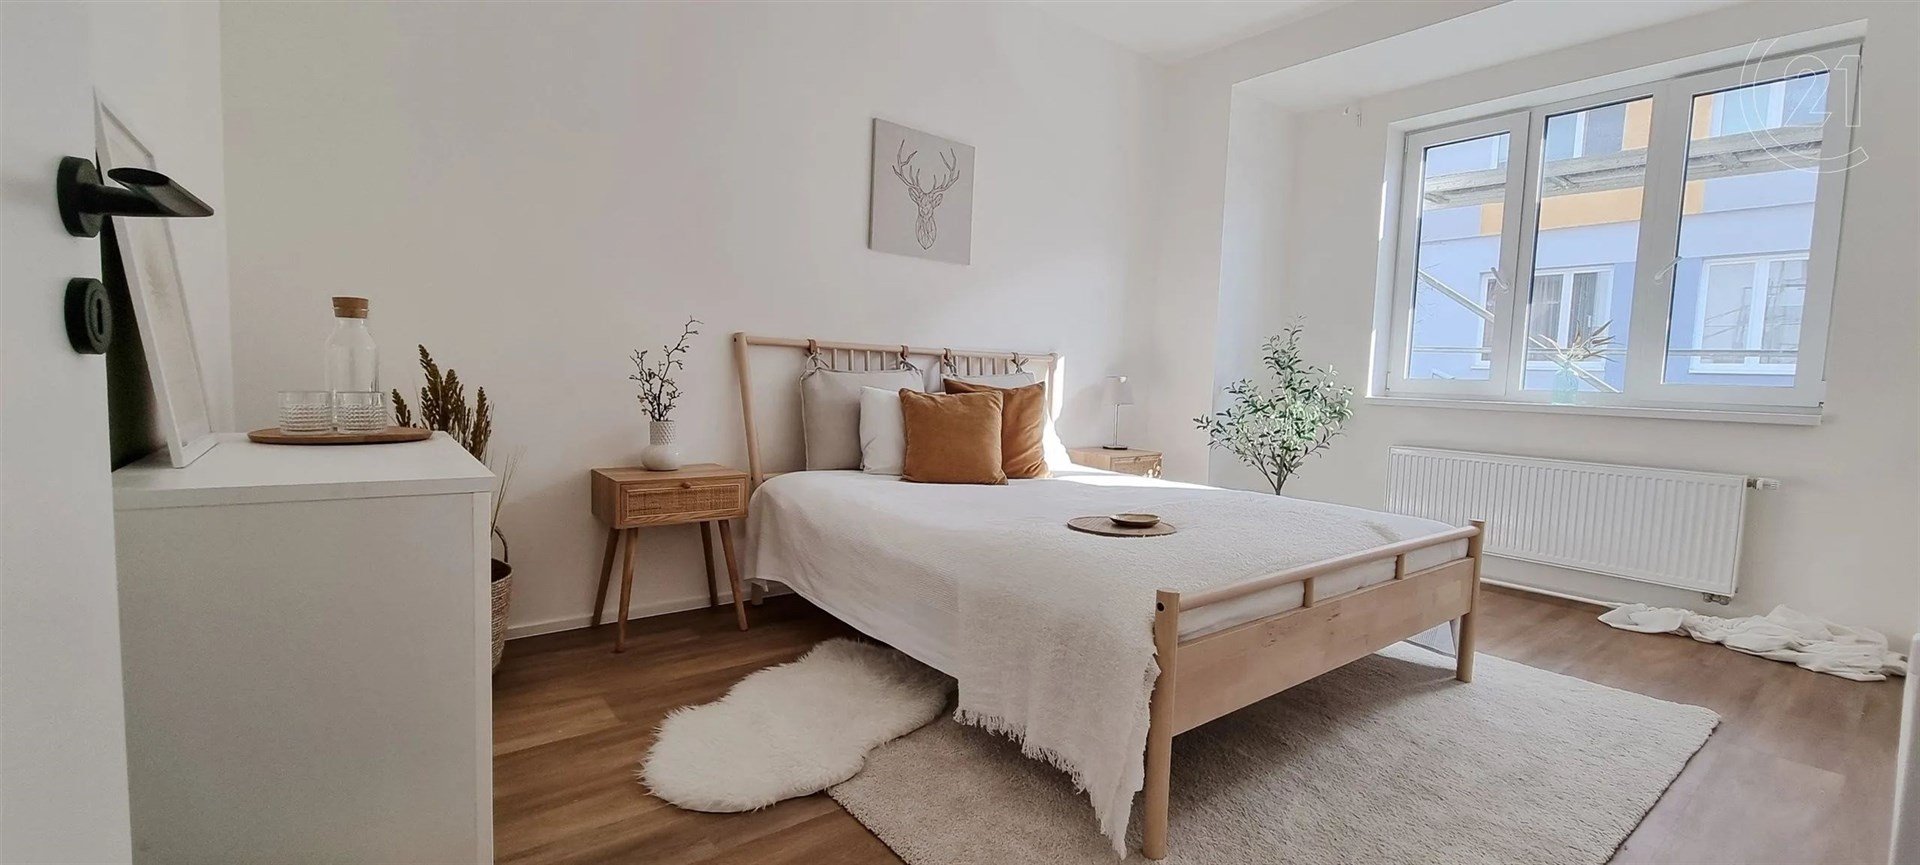 pokoj / ložnice s přirozené světlo, radiátor, a dřevěná podlaha